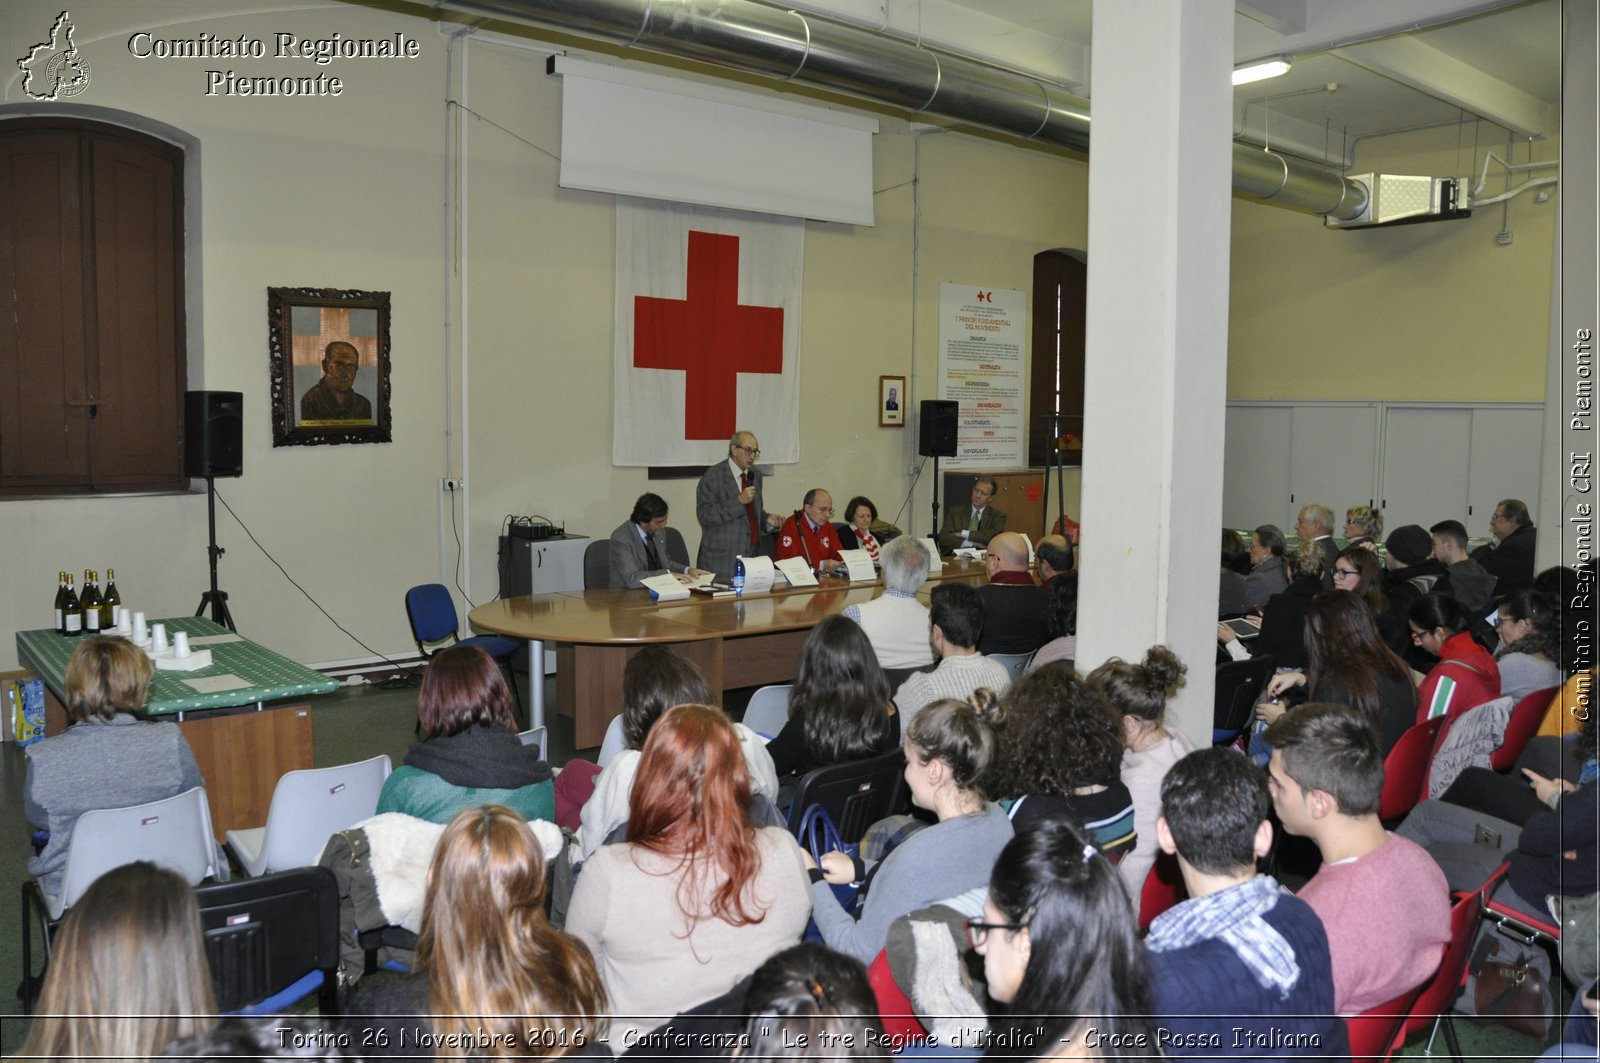 Torino 26 Novembre 2016 - Conferenza "Le tre Regine d'Italia" - Croce Rossa Italiana- Comitato Regionale del Piemonte